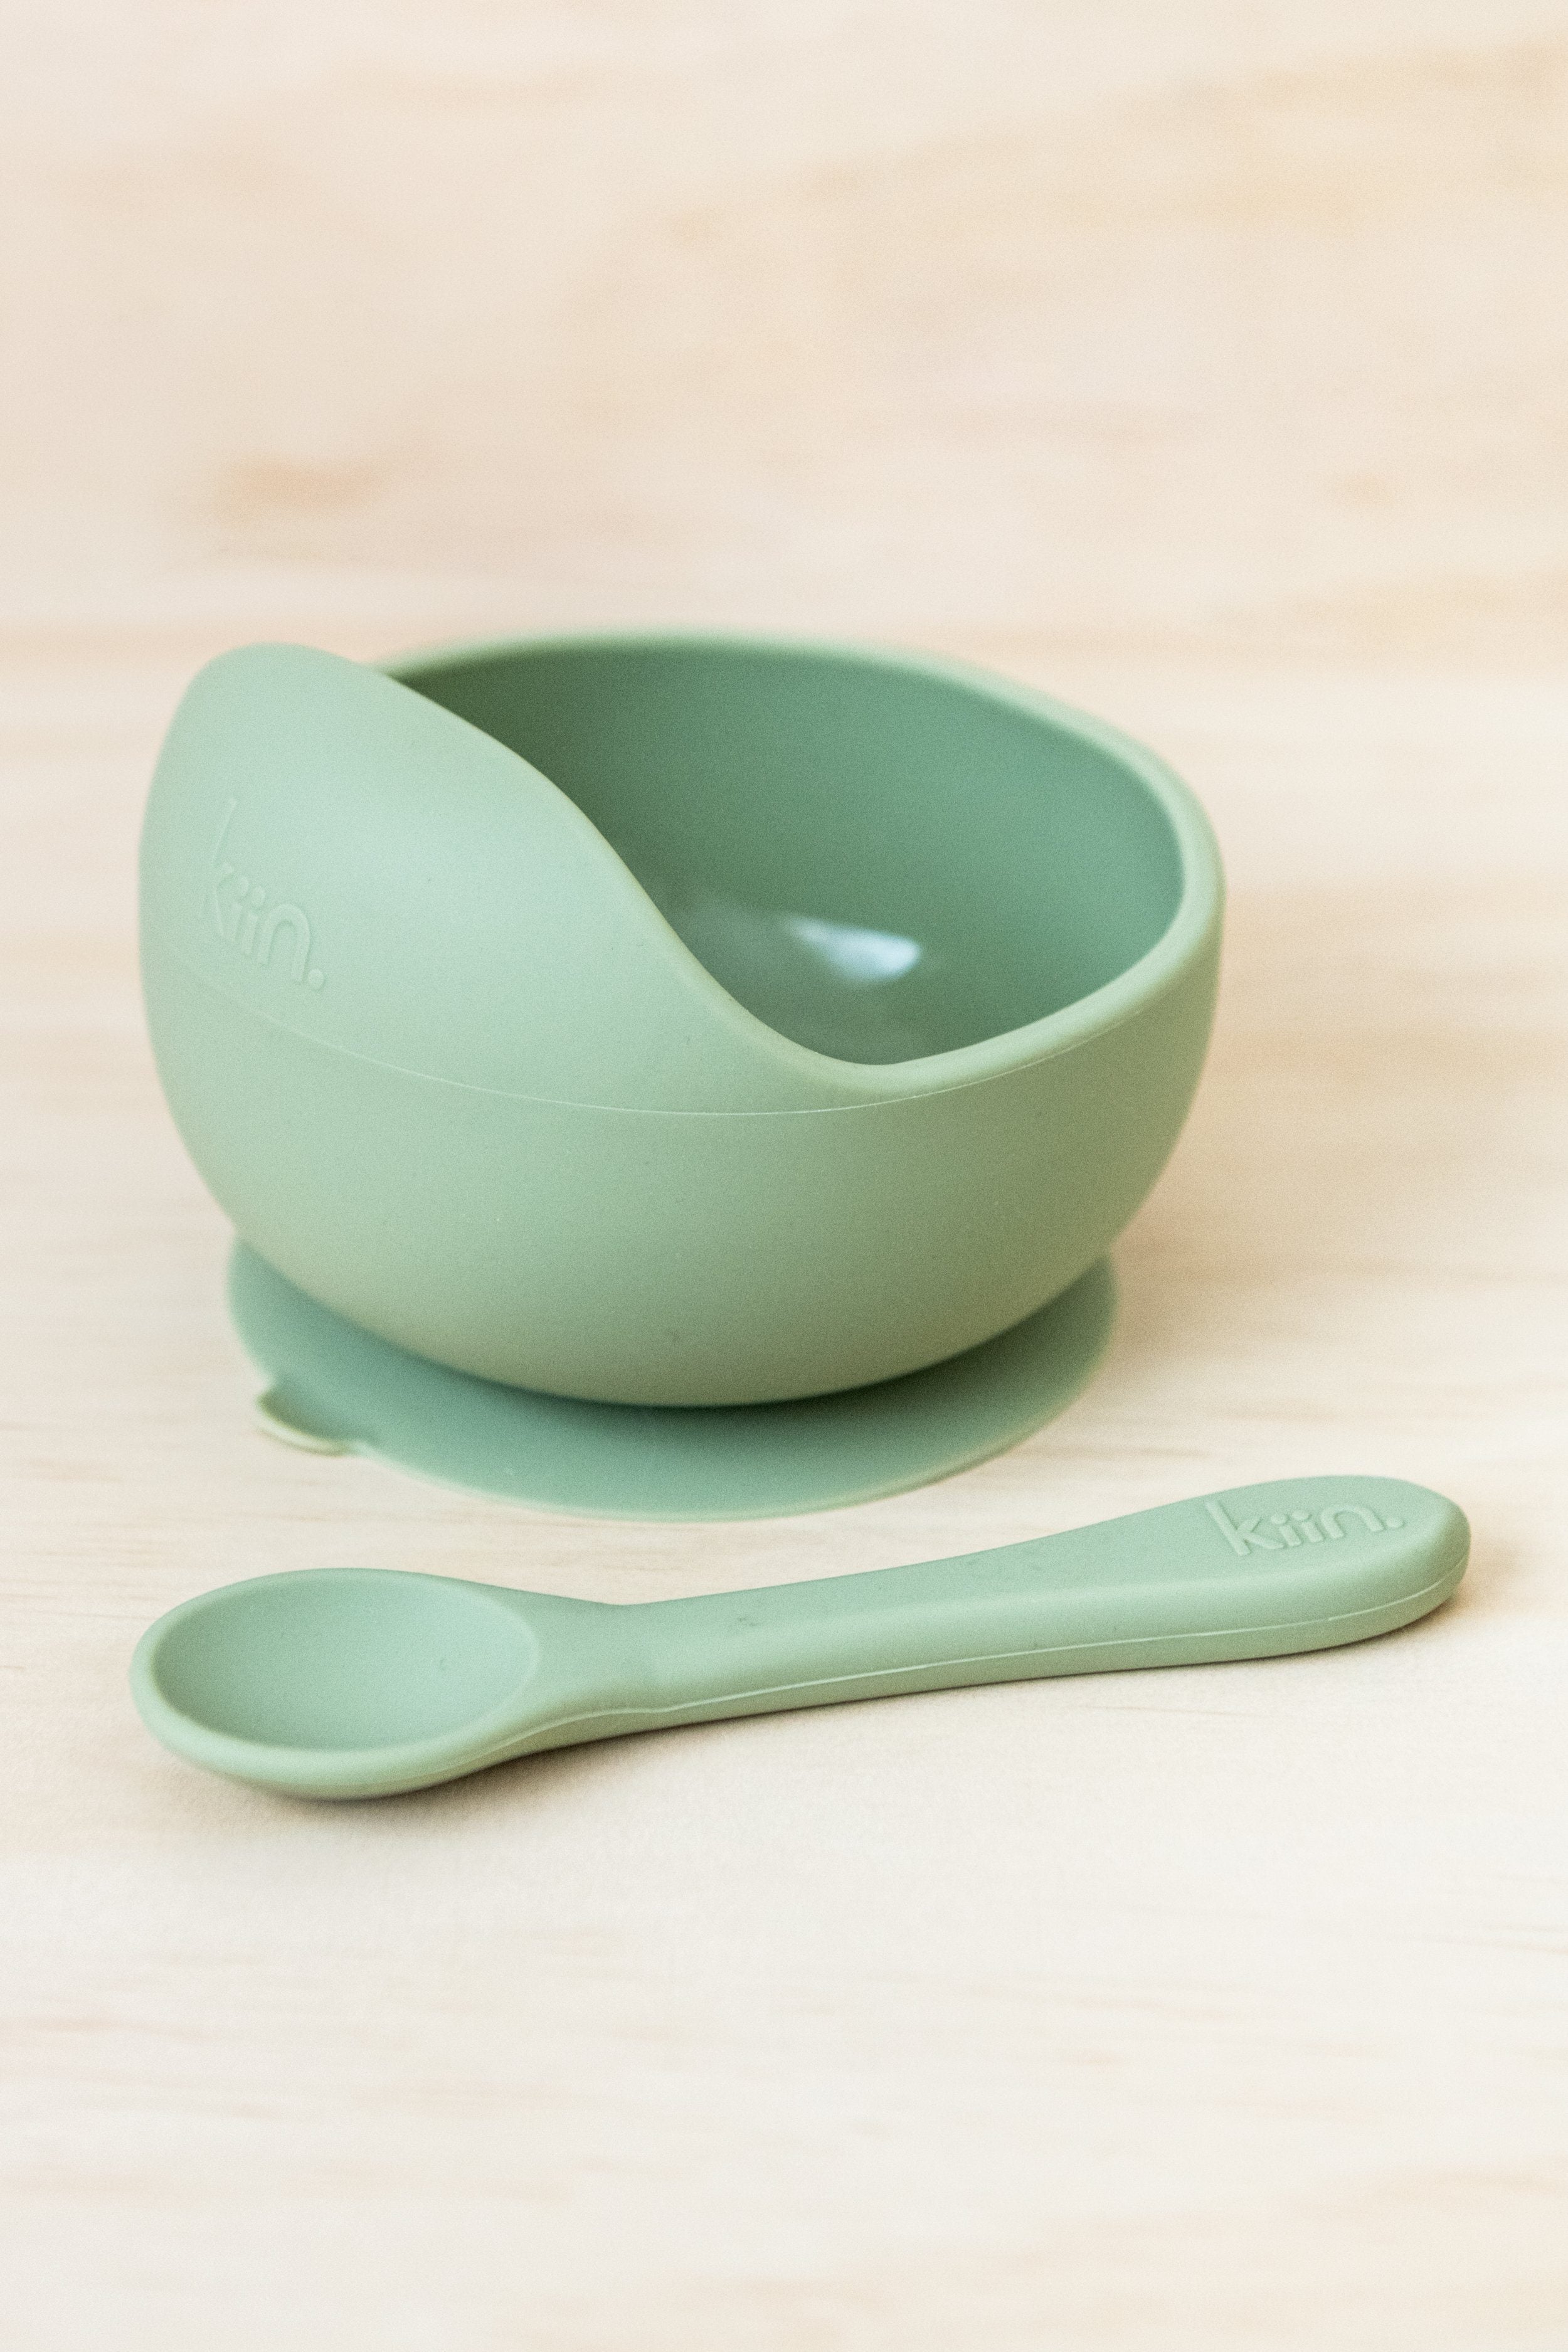 Kiin | Silicone Bowl & Spoon Set